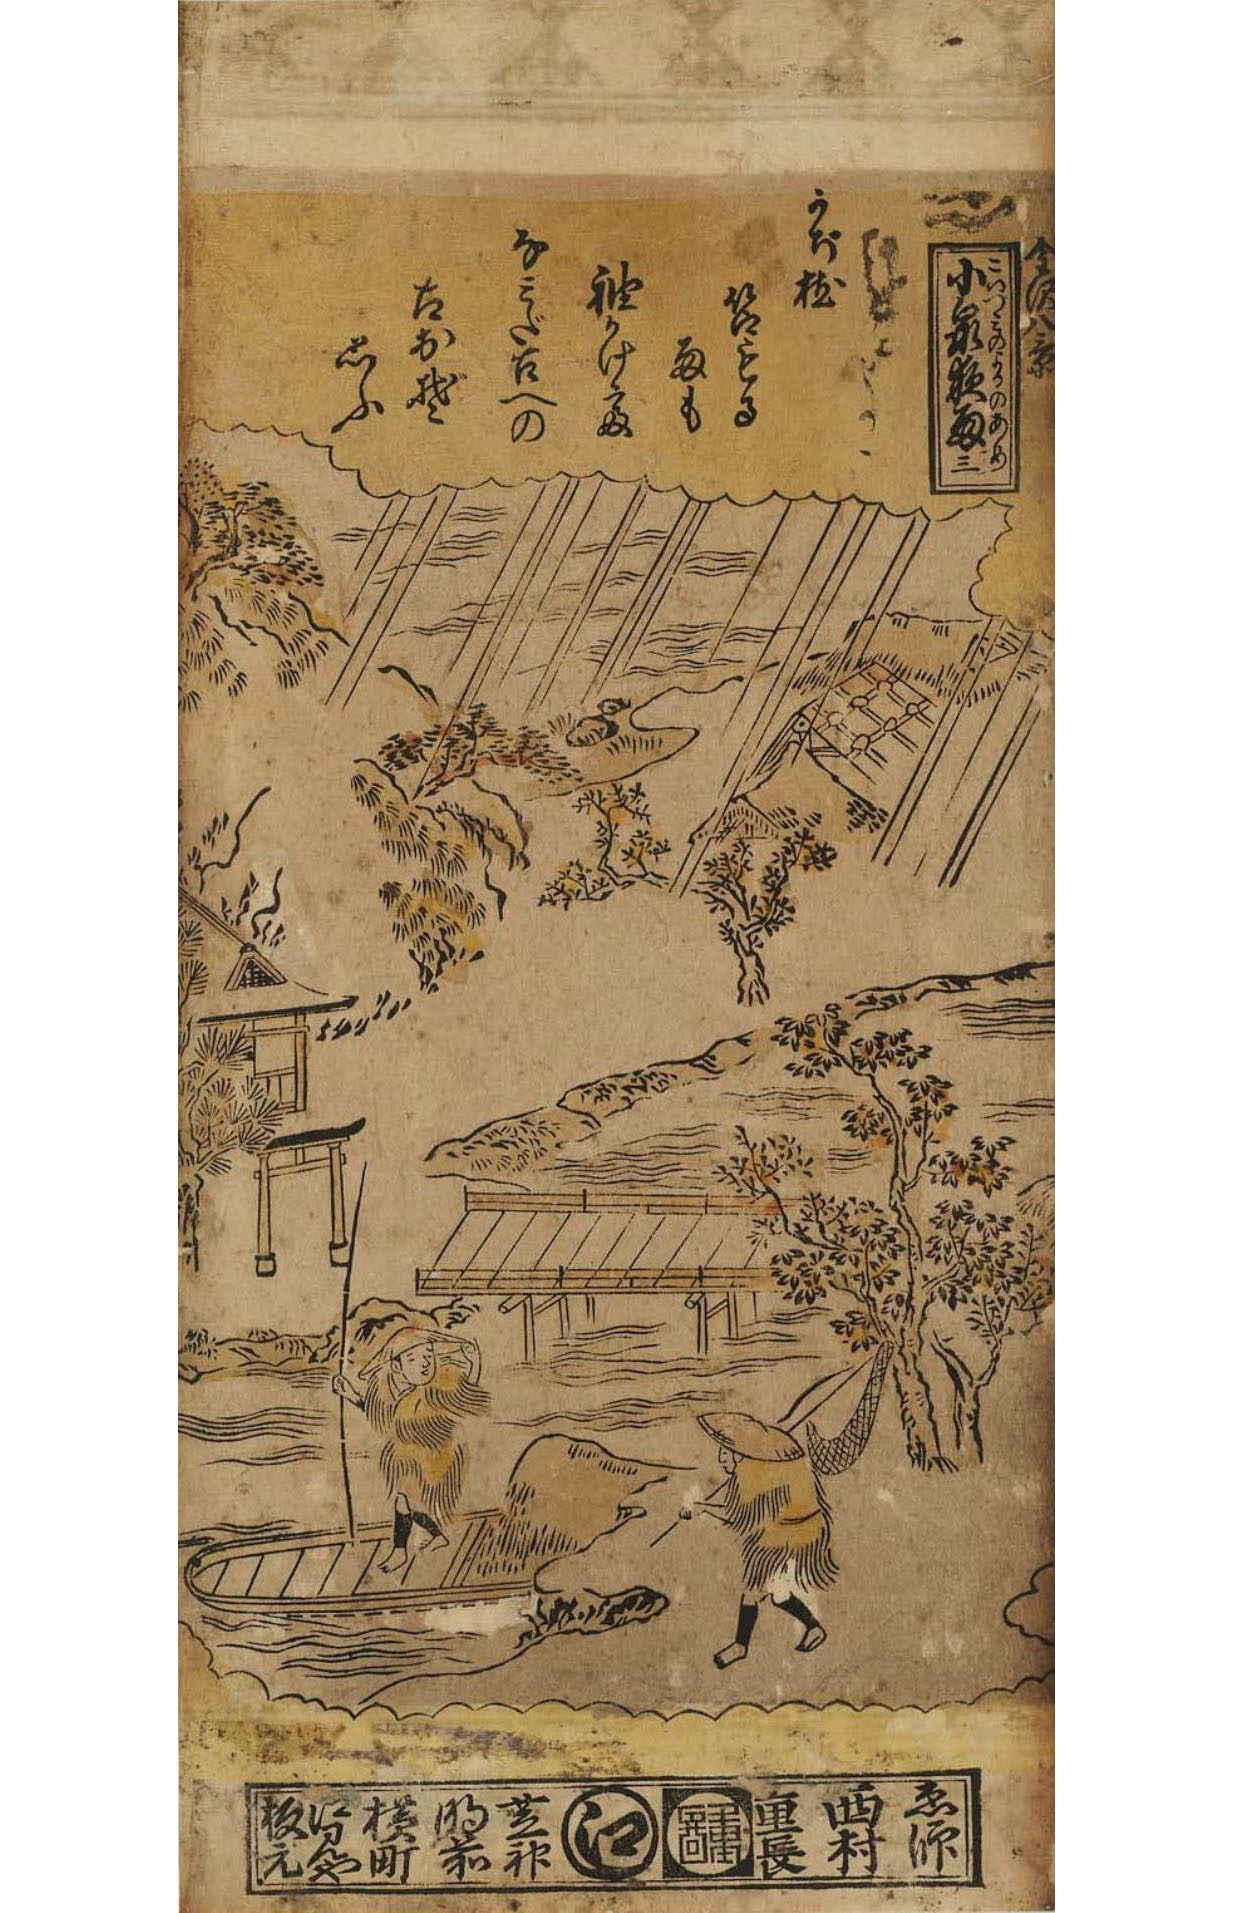 Нисимура Сигэнага. "Ночной дождь на Коидзуми". Серия "8 видов Канадзава", №3.